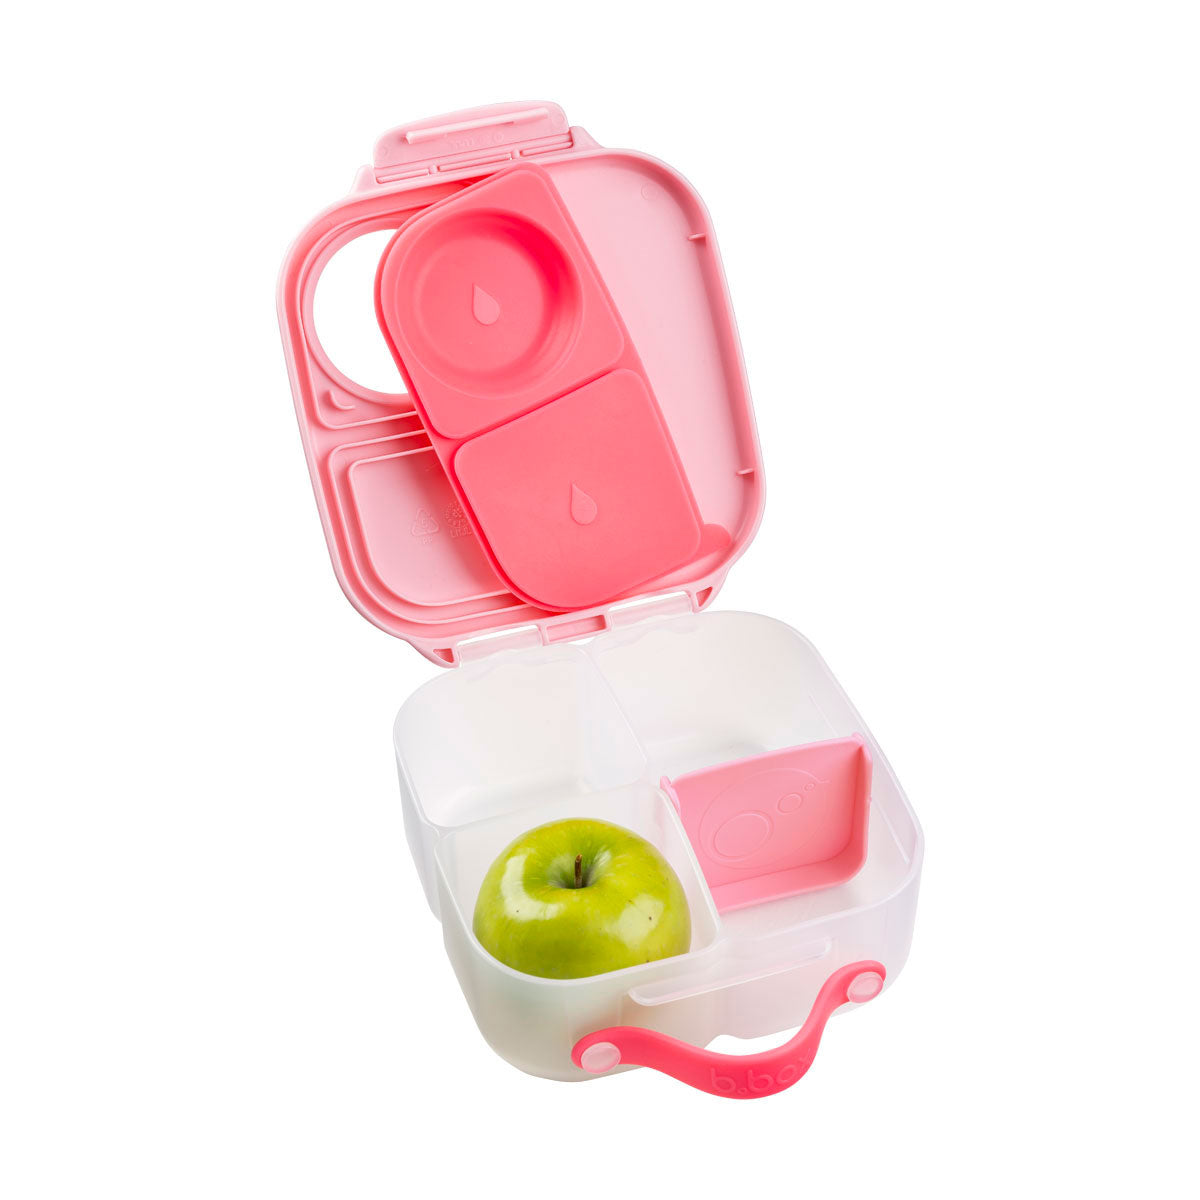 Flamingo fizz pink lunch box mini by bbox